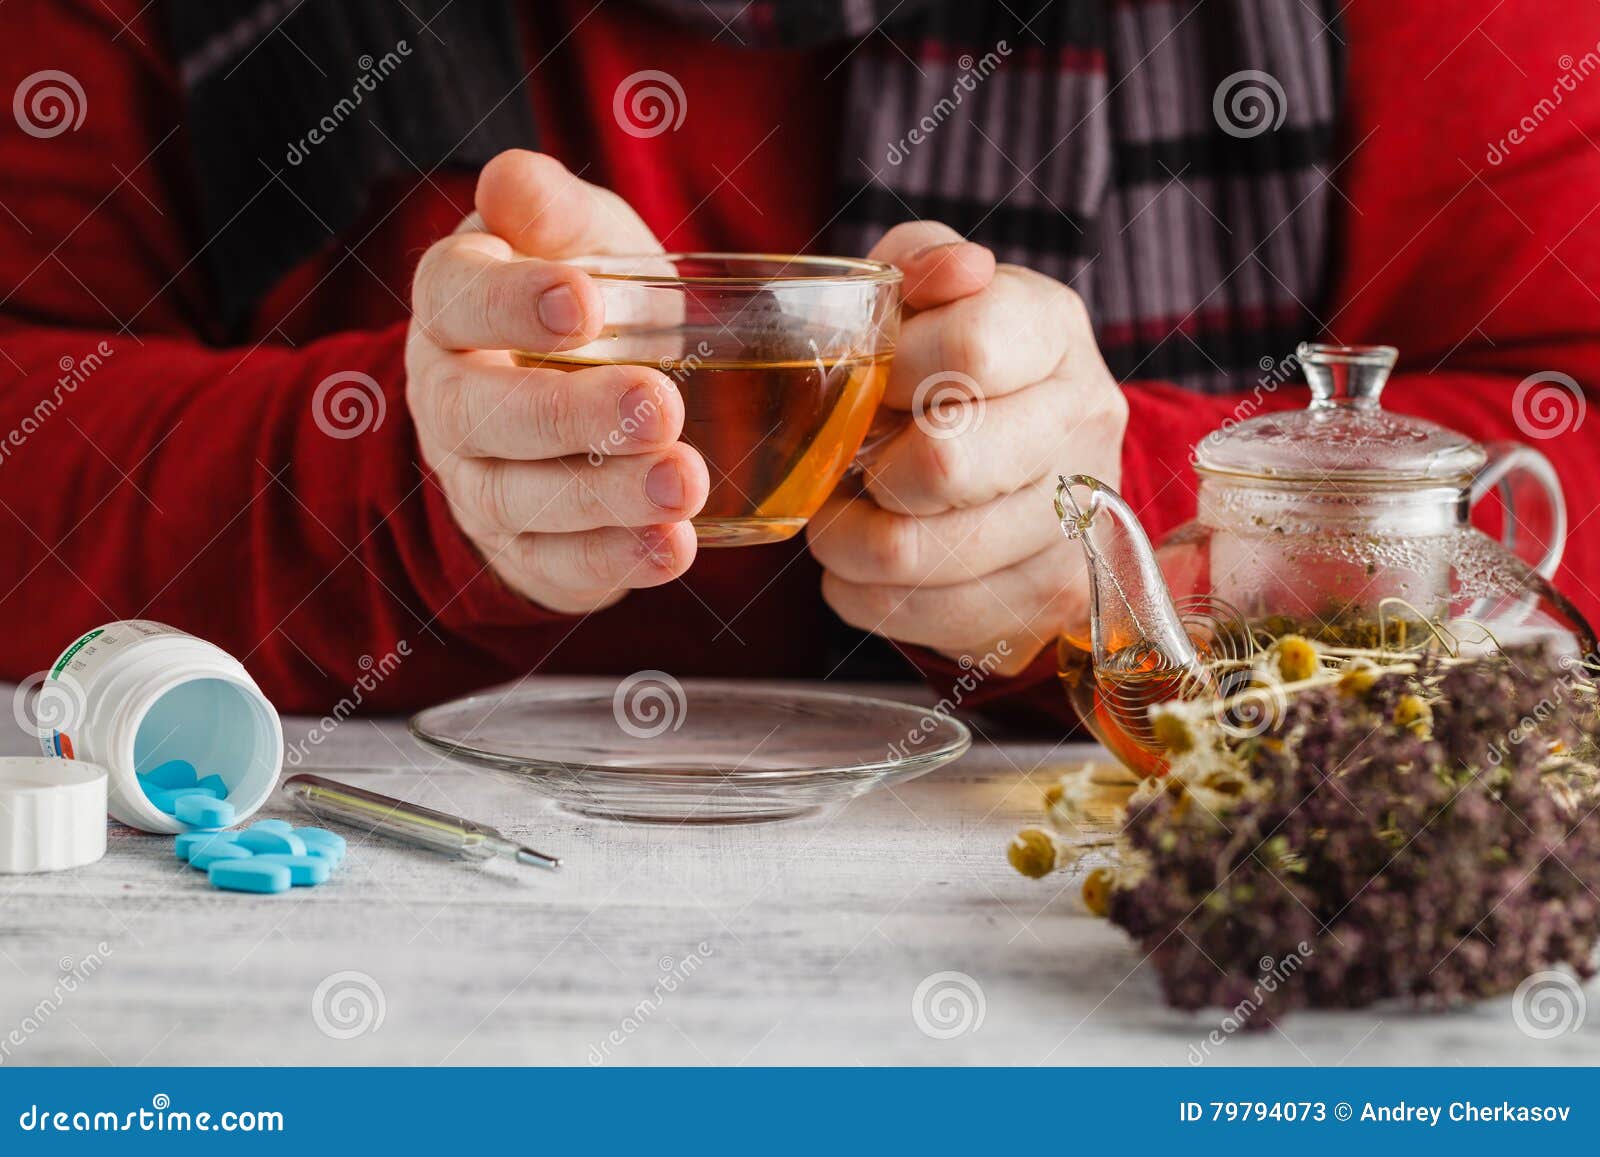 При температуре пьют горячий чай. Горячий чай в жару. Чай в таблетках. Мужчина пьет чай с травами. Пьет травяной чай.